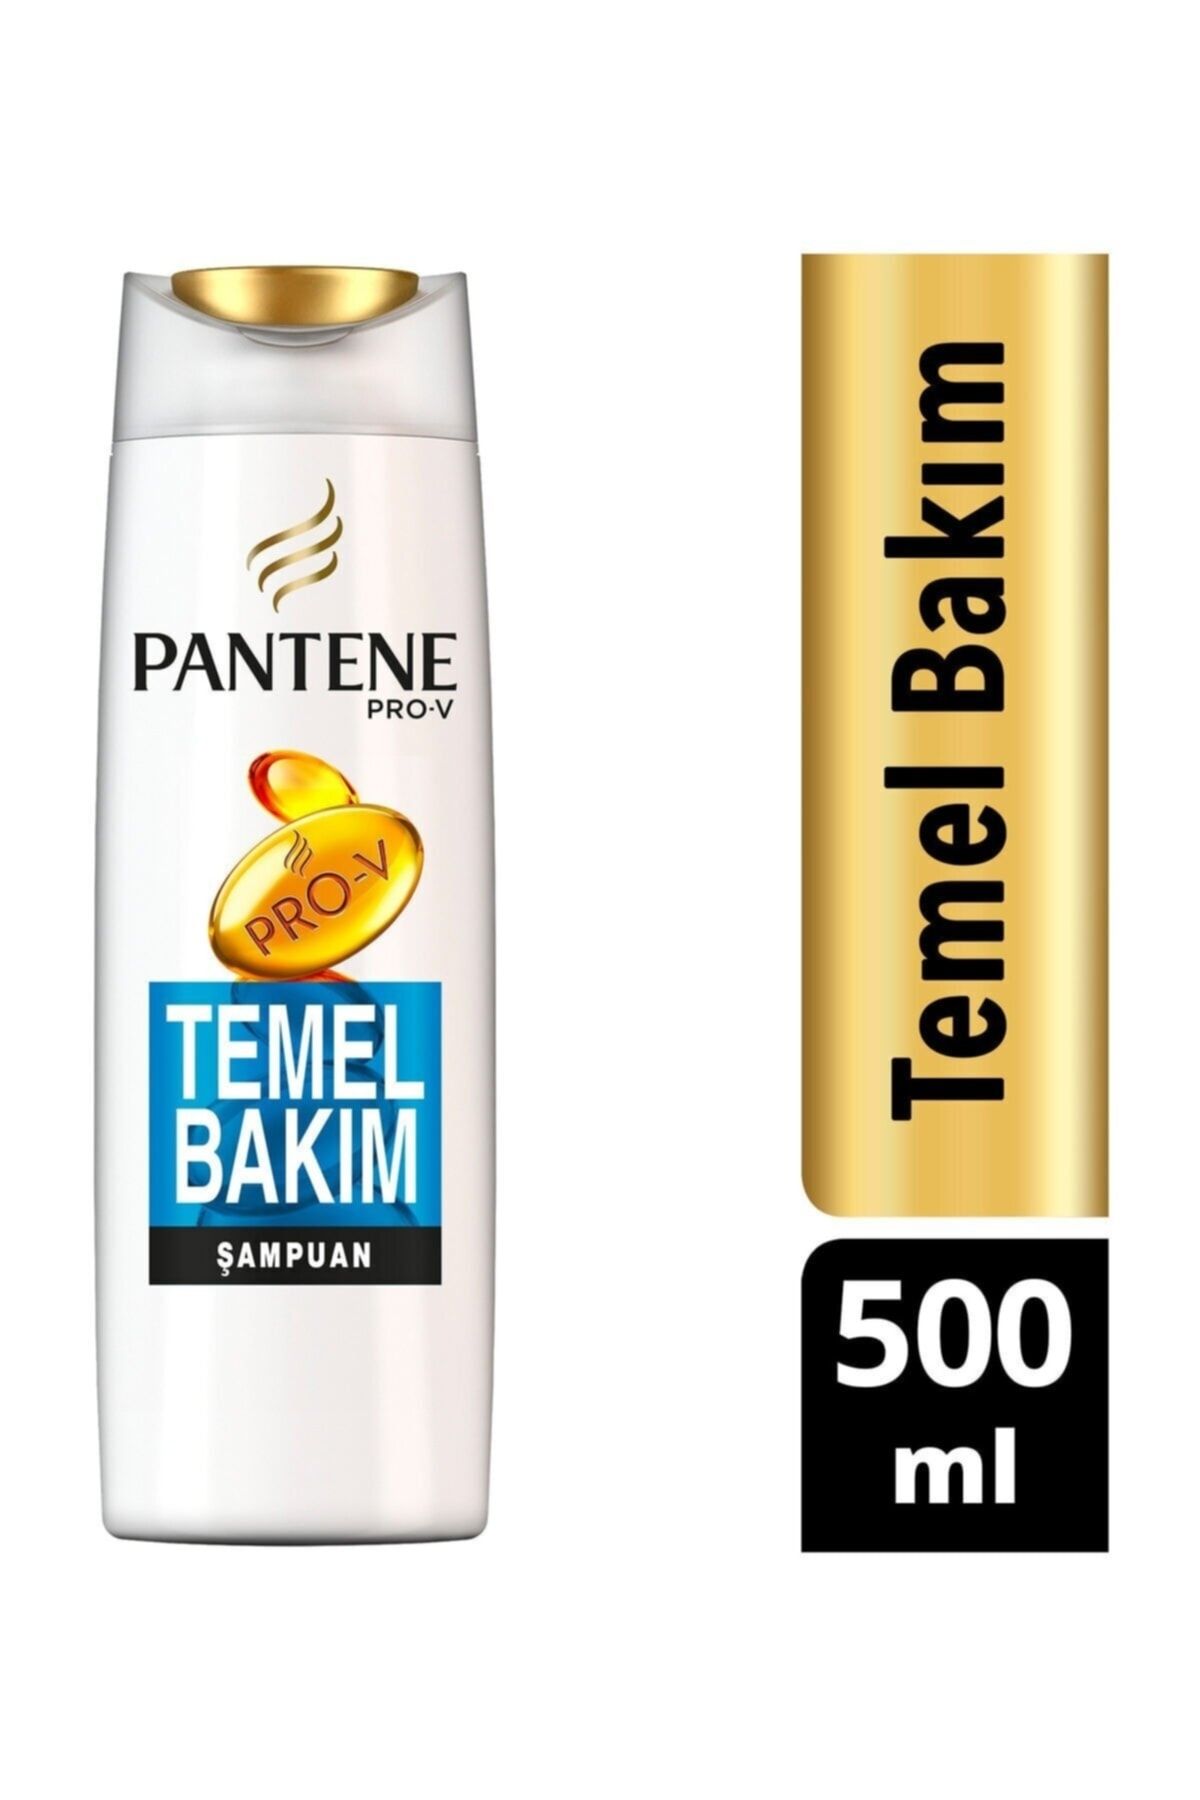 Pantene Şampuan Temel Bakım 500 ml